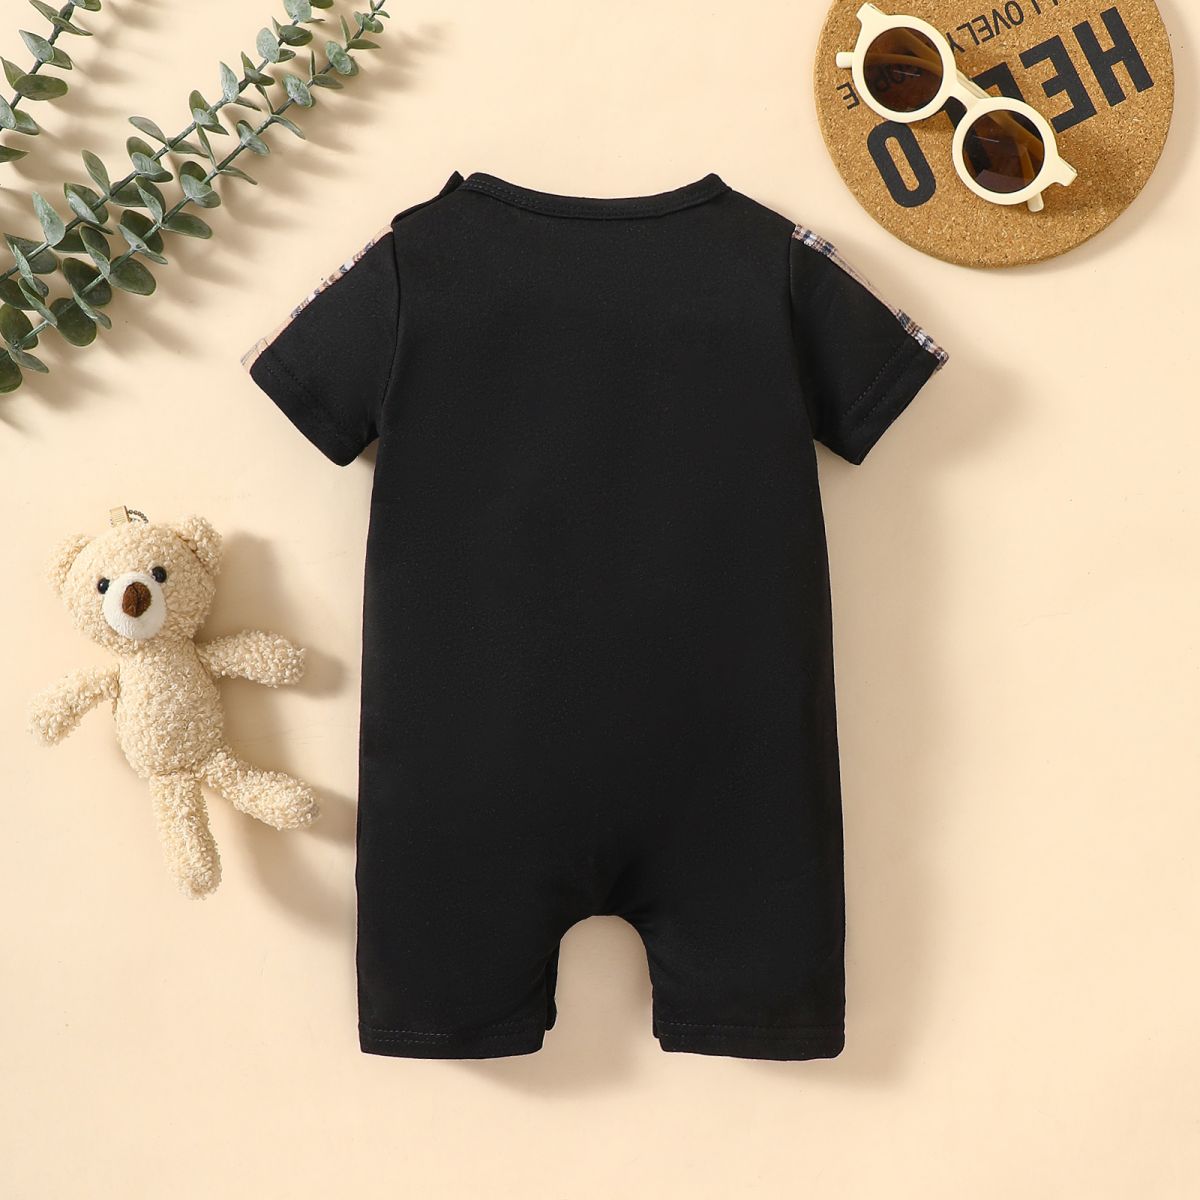 Infant/Baby MINI BOSS Bear Graphic Short Sleeve Romper